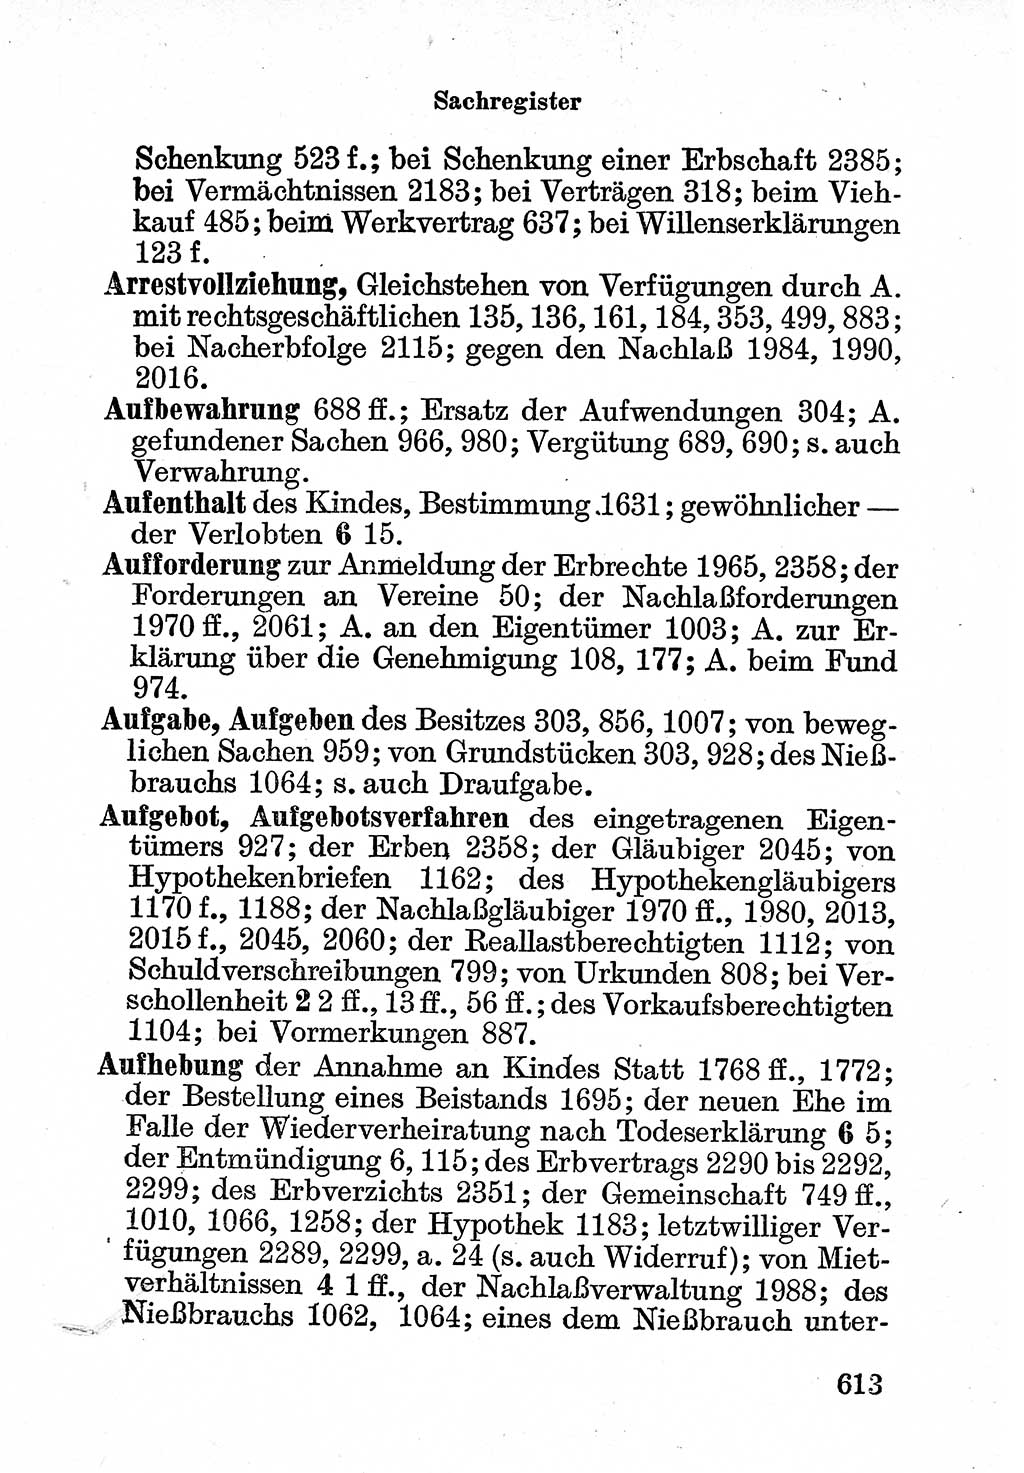 Bürgerliches Gesetzbuch (BGB) nebst wichtigen Nebengesetzen [Deutsche Demokratische Republik (DDR)] 1956, Seite 613 (BGB Nebenges. DDR 1956, S. 613)